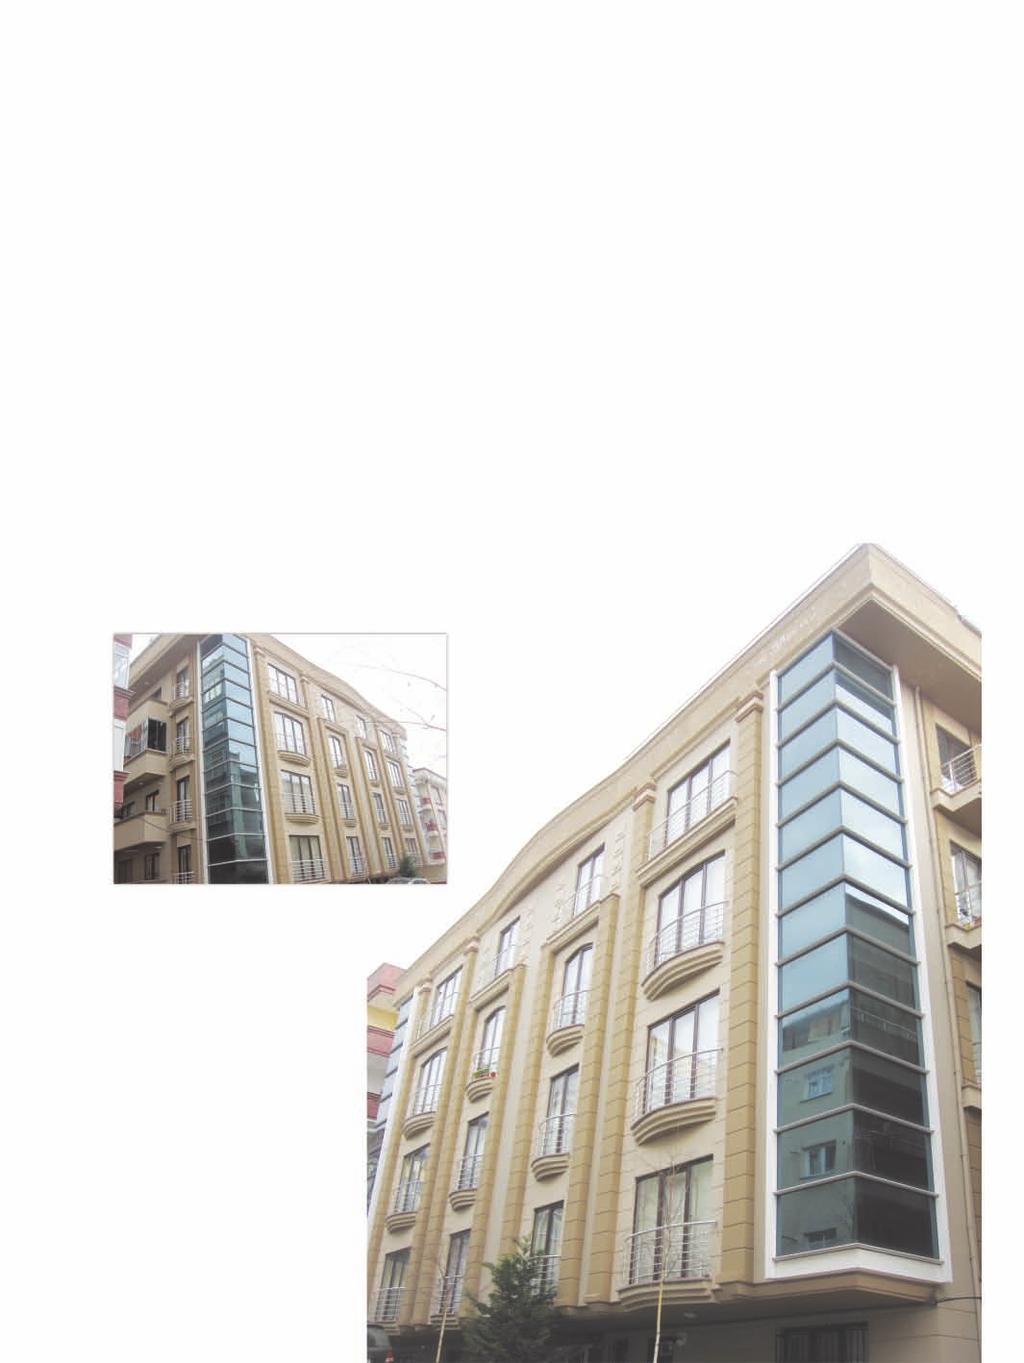 Meryem Apartmanı / Meryem Apartment Building Proje Açıklaması: Apartmanı 10 daireden oluşuyor. 160 m 2 C30 beton sınıfı kullanılarak inşaa edildi. Tüm katlar arasında ısı ve ses yalıtımı var.